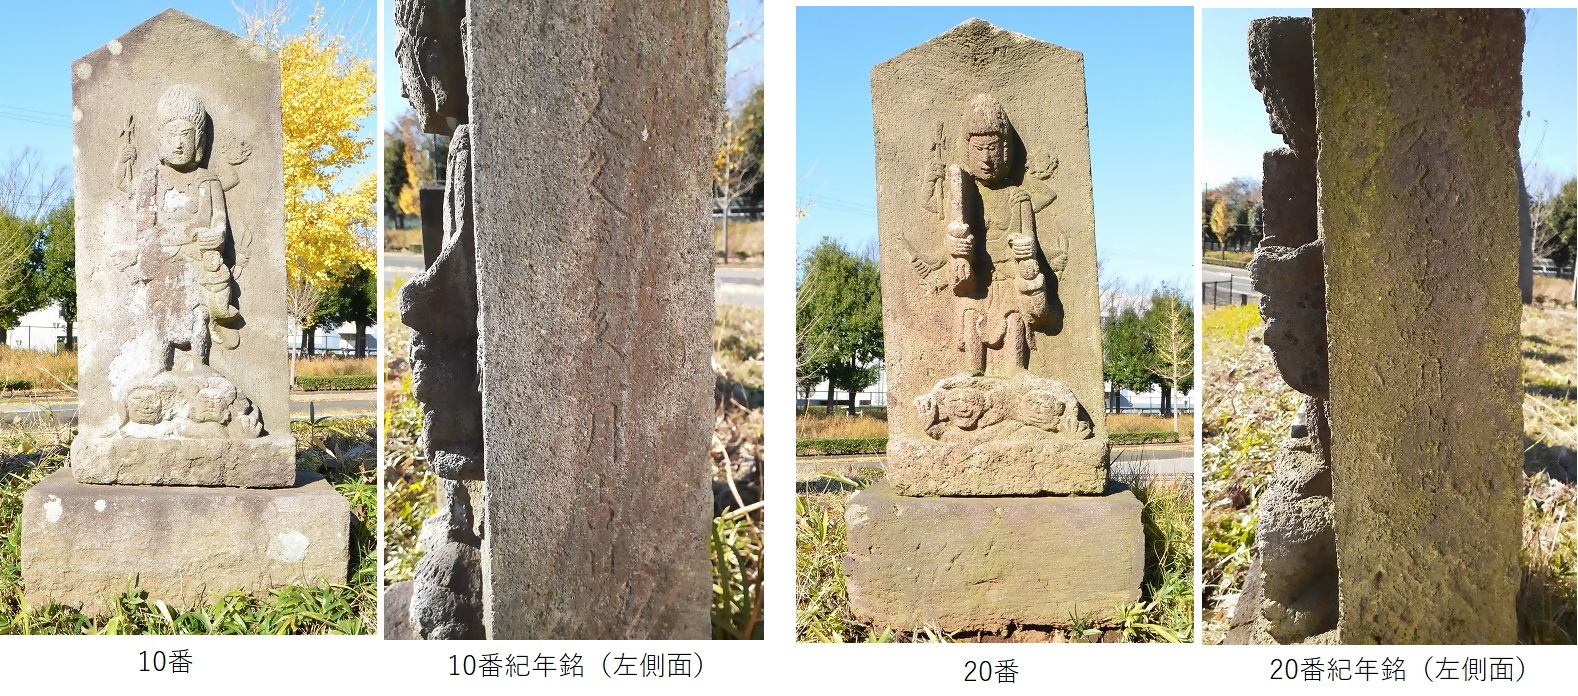 10番と20番の青面金剛像塔とそれらの紀年銘の画像